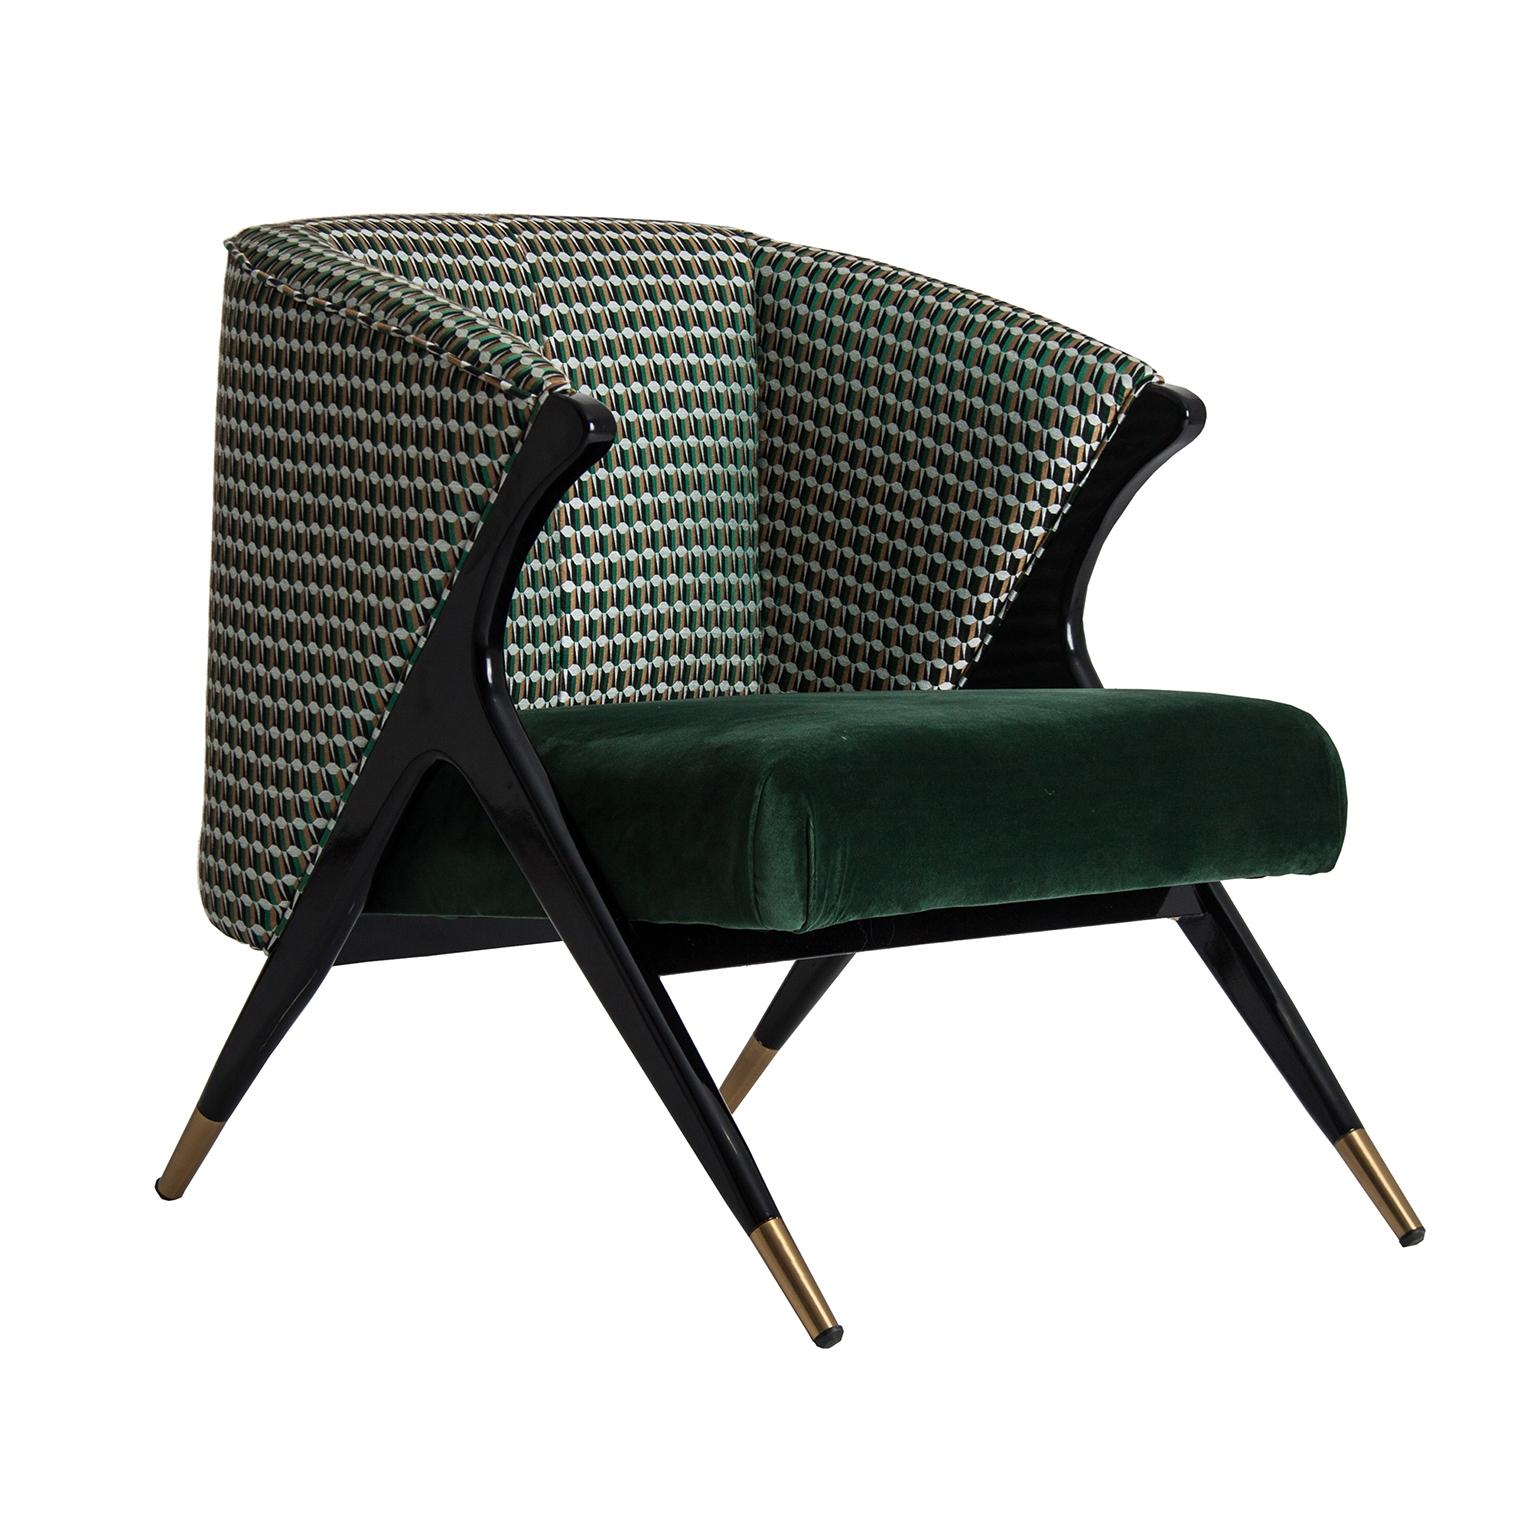 Structure en bois laqué noir avec finition en laiton ornée d'un fauteuil de salon en velours vert profond et graphique de style Mid-Century Modern.